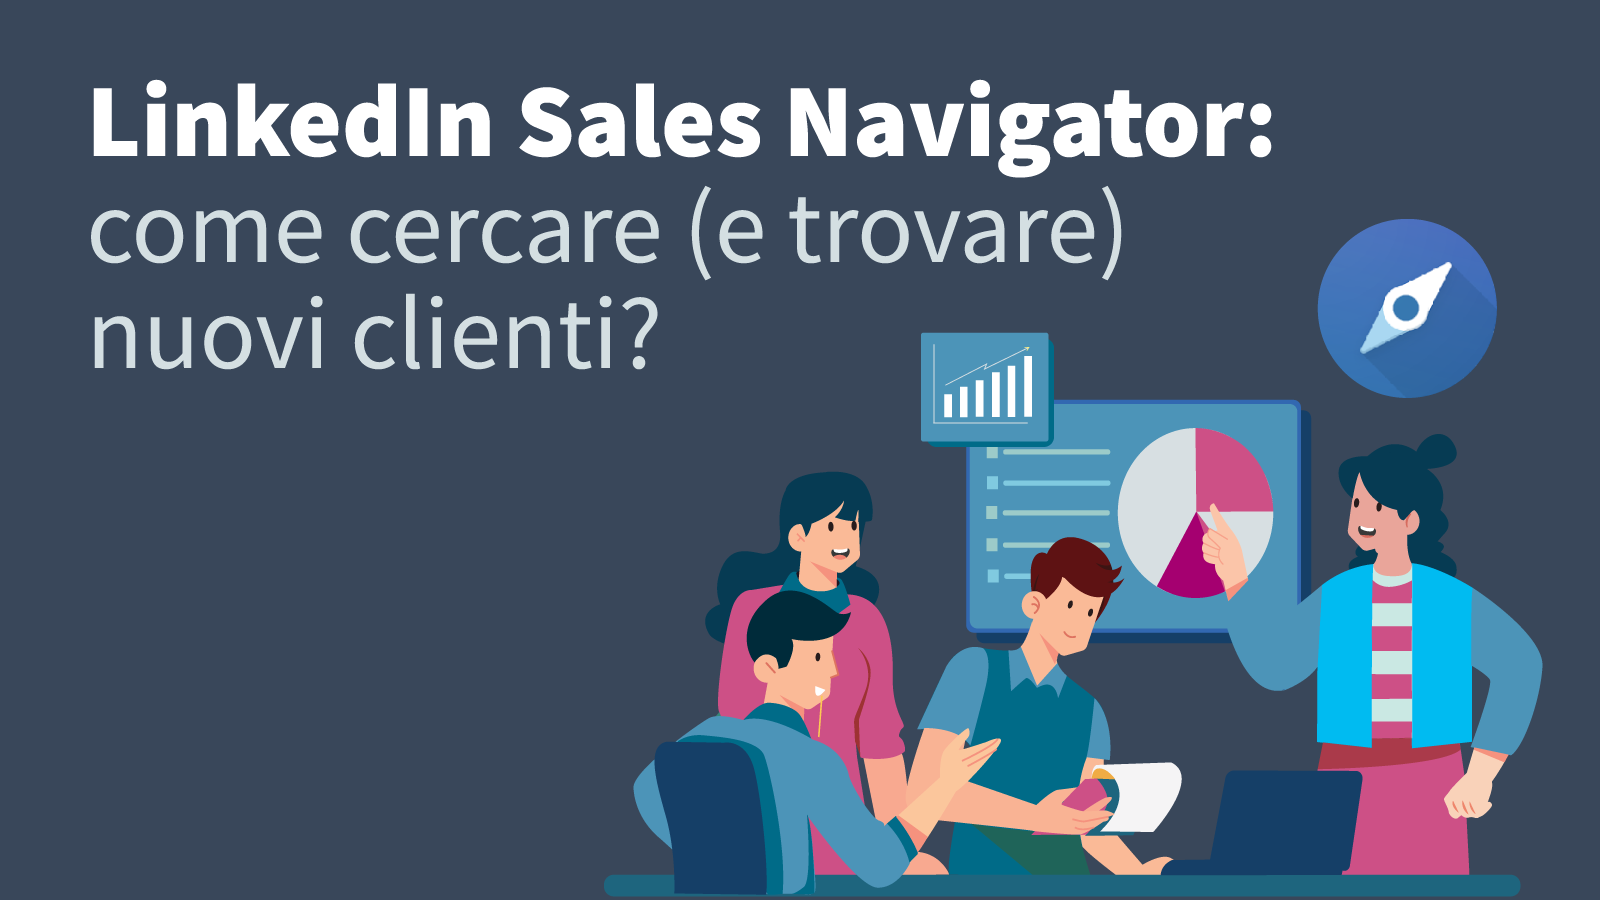 LinkedIn Sales Navigator: come cercare (e trovare) nuovi clienti